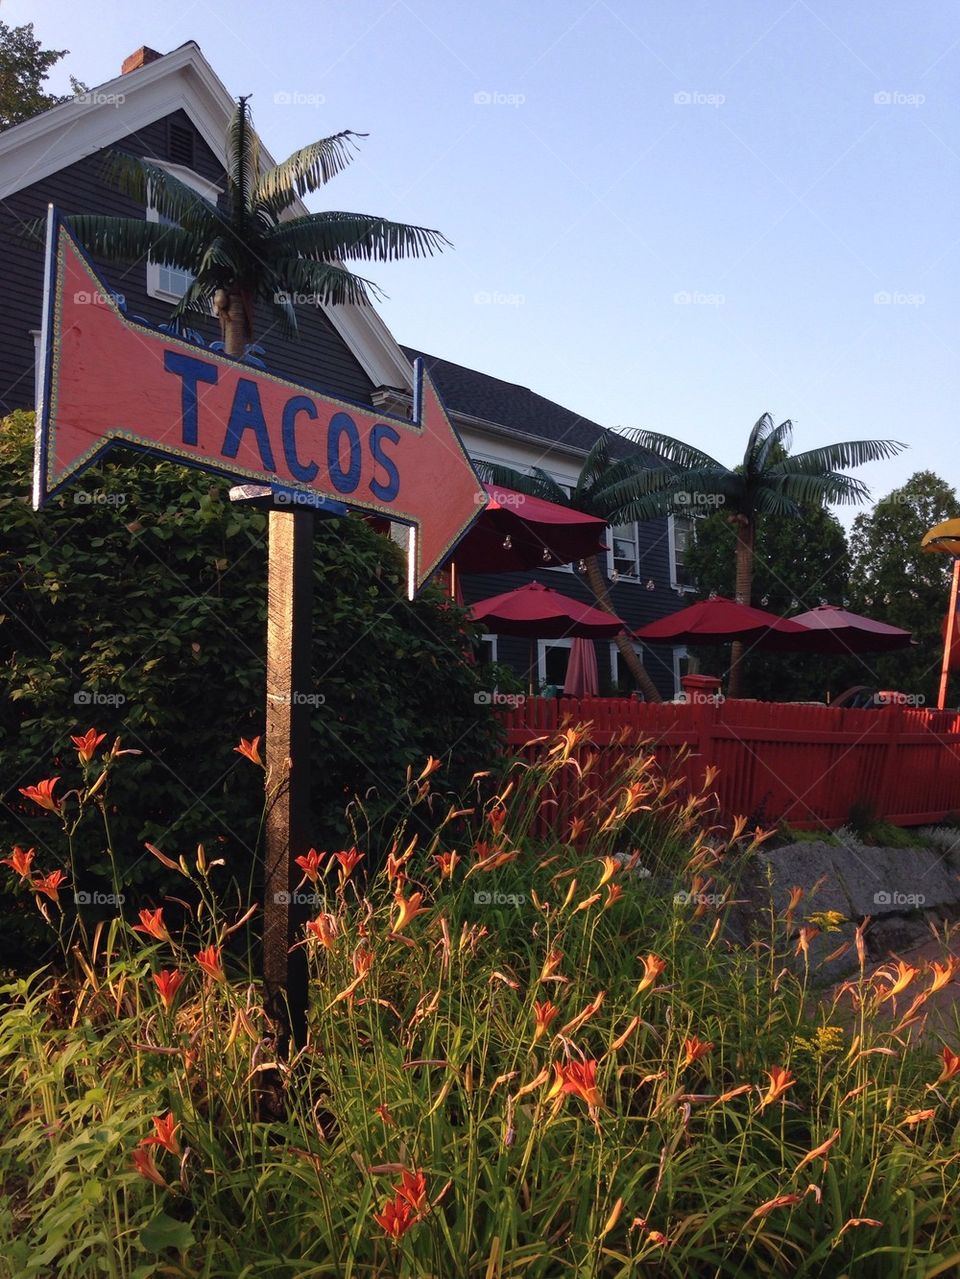 Tacos in Maine